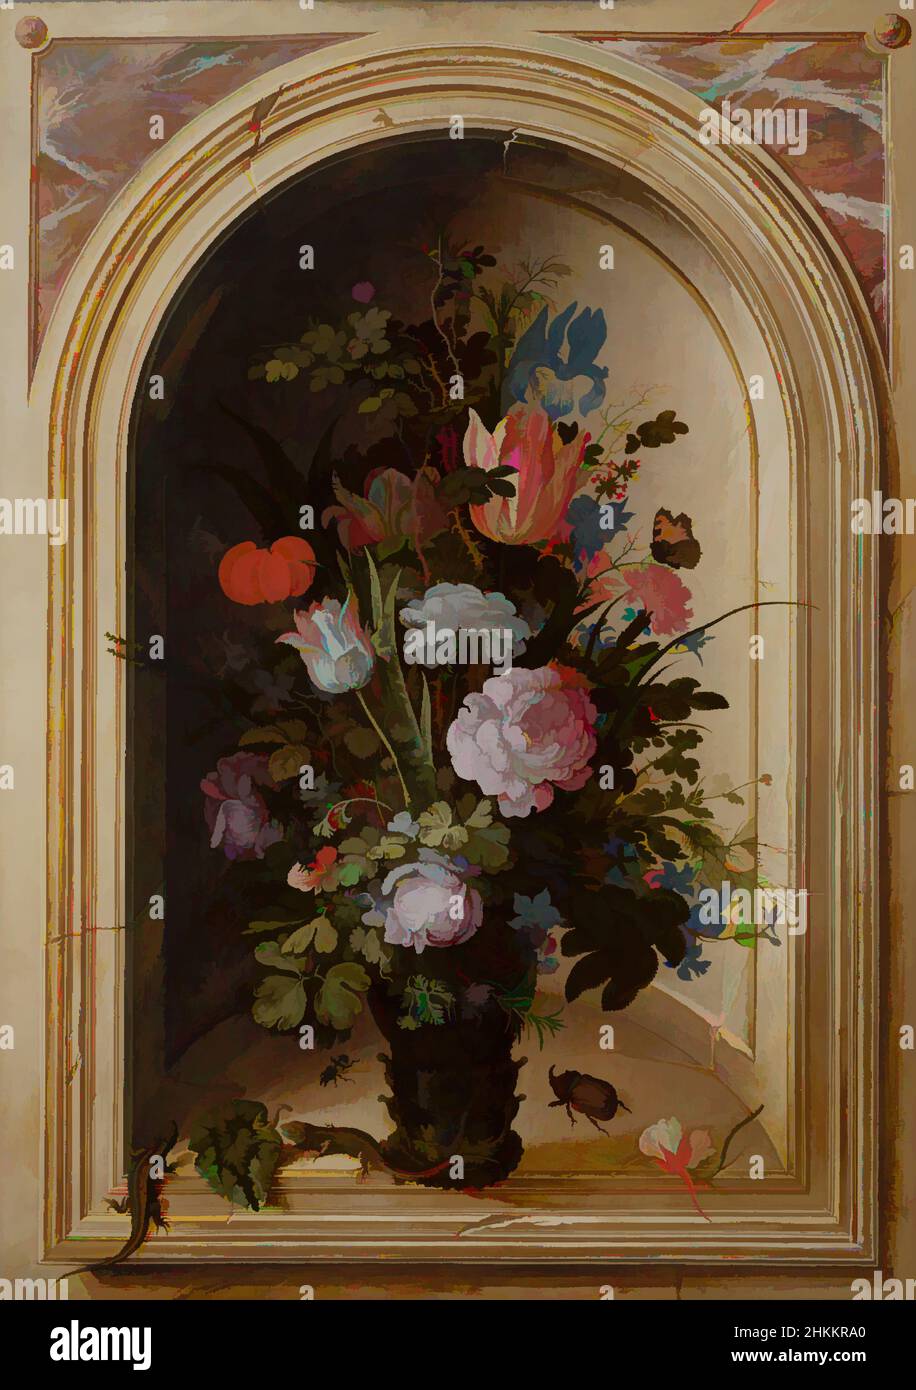 Art inspiré par vase de fleurs dans une niche en pierre, Roelant Savery, 1615, oeuvres classiques modernisées par Artotop avec une touche de modernité. Formes, couleur et valeur, impact visuel accrocheur sur l'art émotions par la liberté d'œuvres d'art d'une manière contemporaine. Un message intemporel qui cherche une nouvelle direction créative. Artistes qui se tournent vers le support numérique et créent le NFT Artotop Banque D'Images